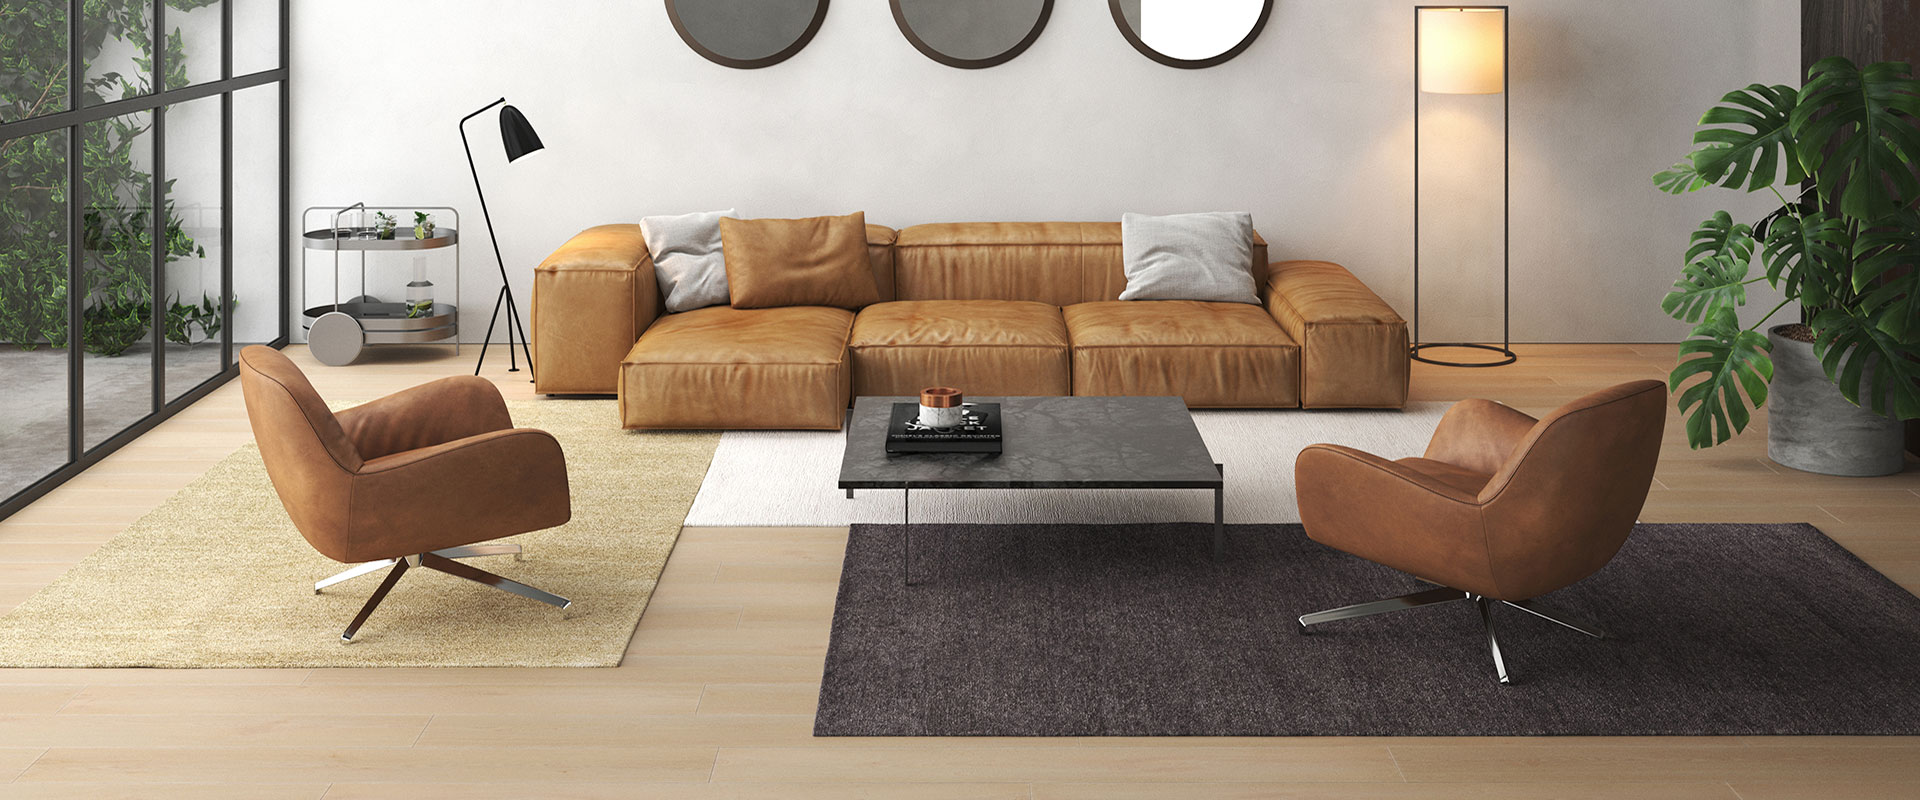 Marouk Plain Carpets interior design image